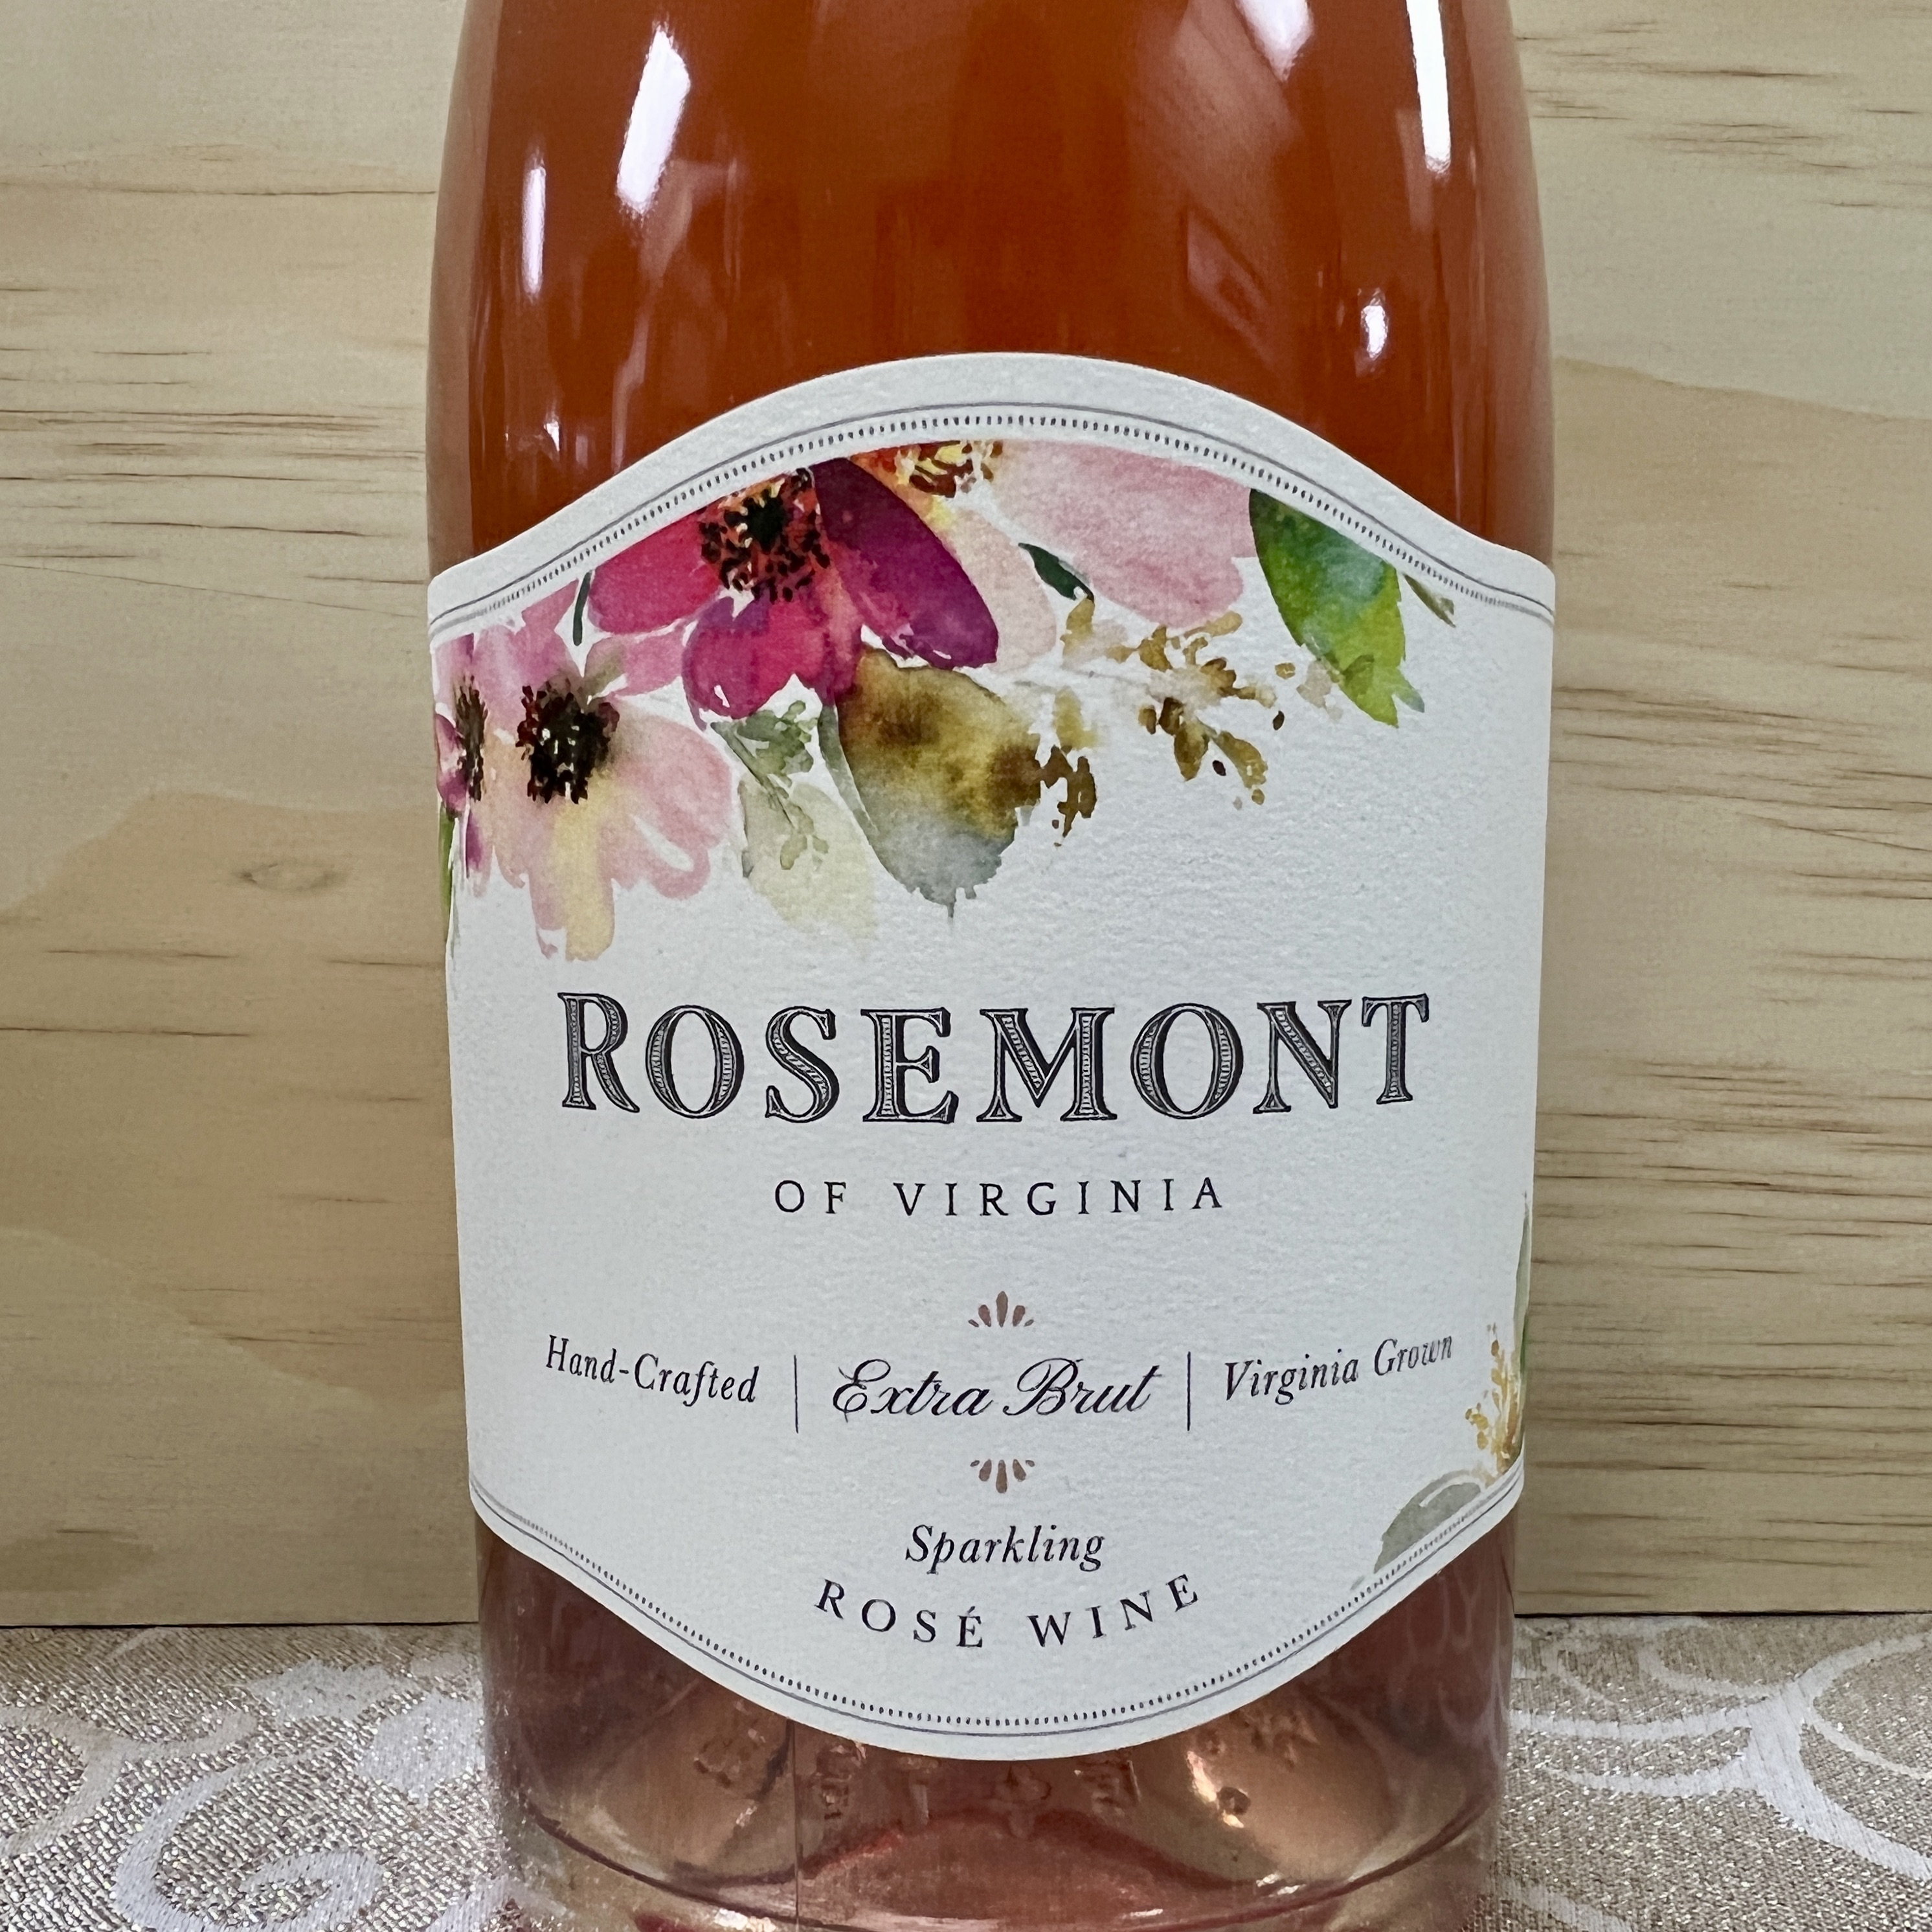 Rosemont Extra Brut Sparkling Rose wine